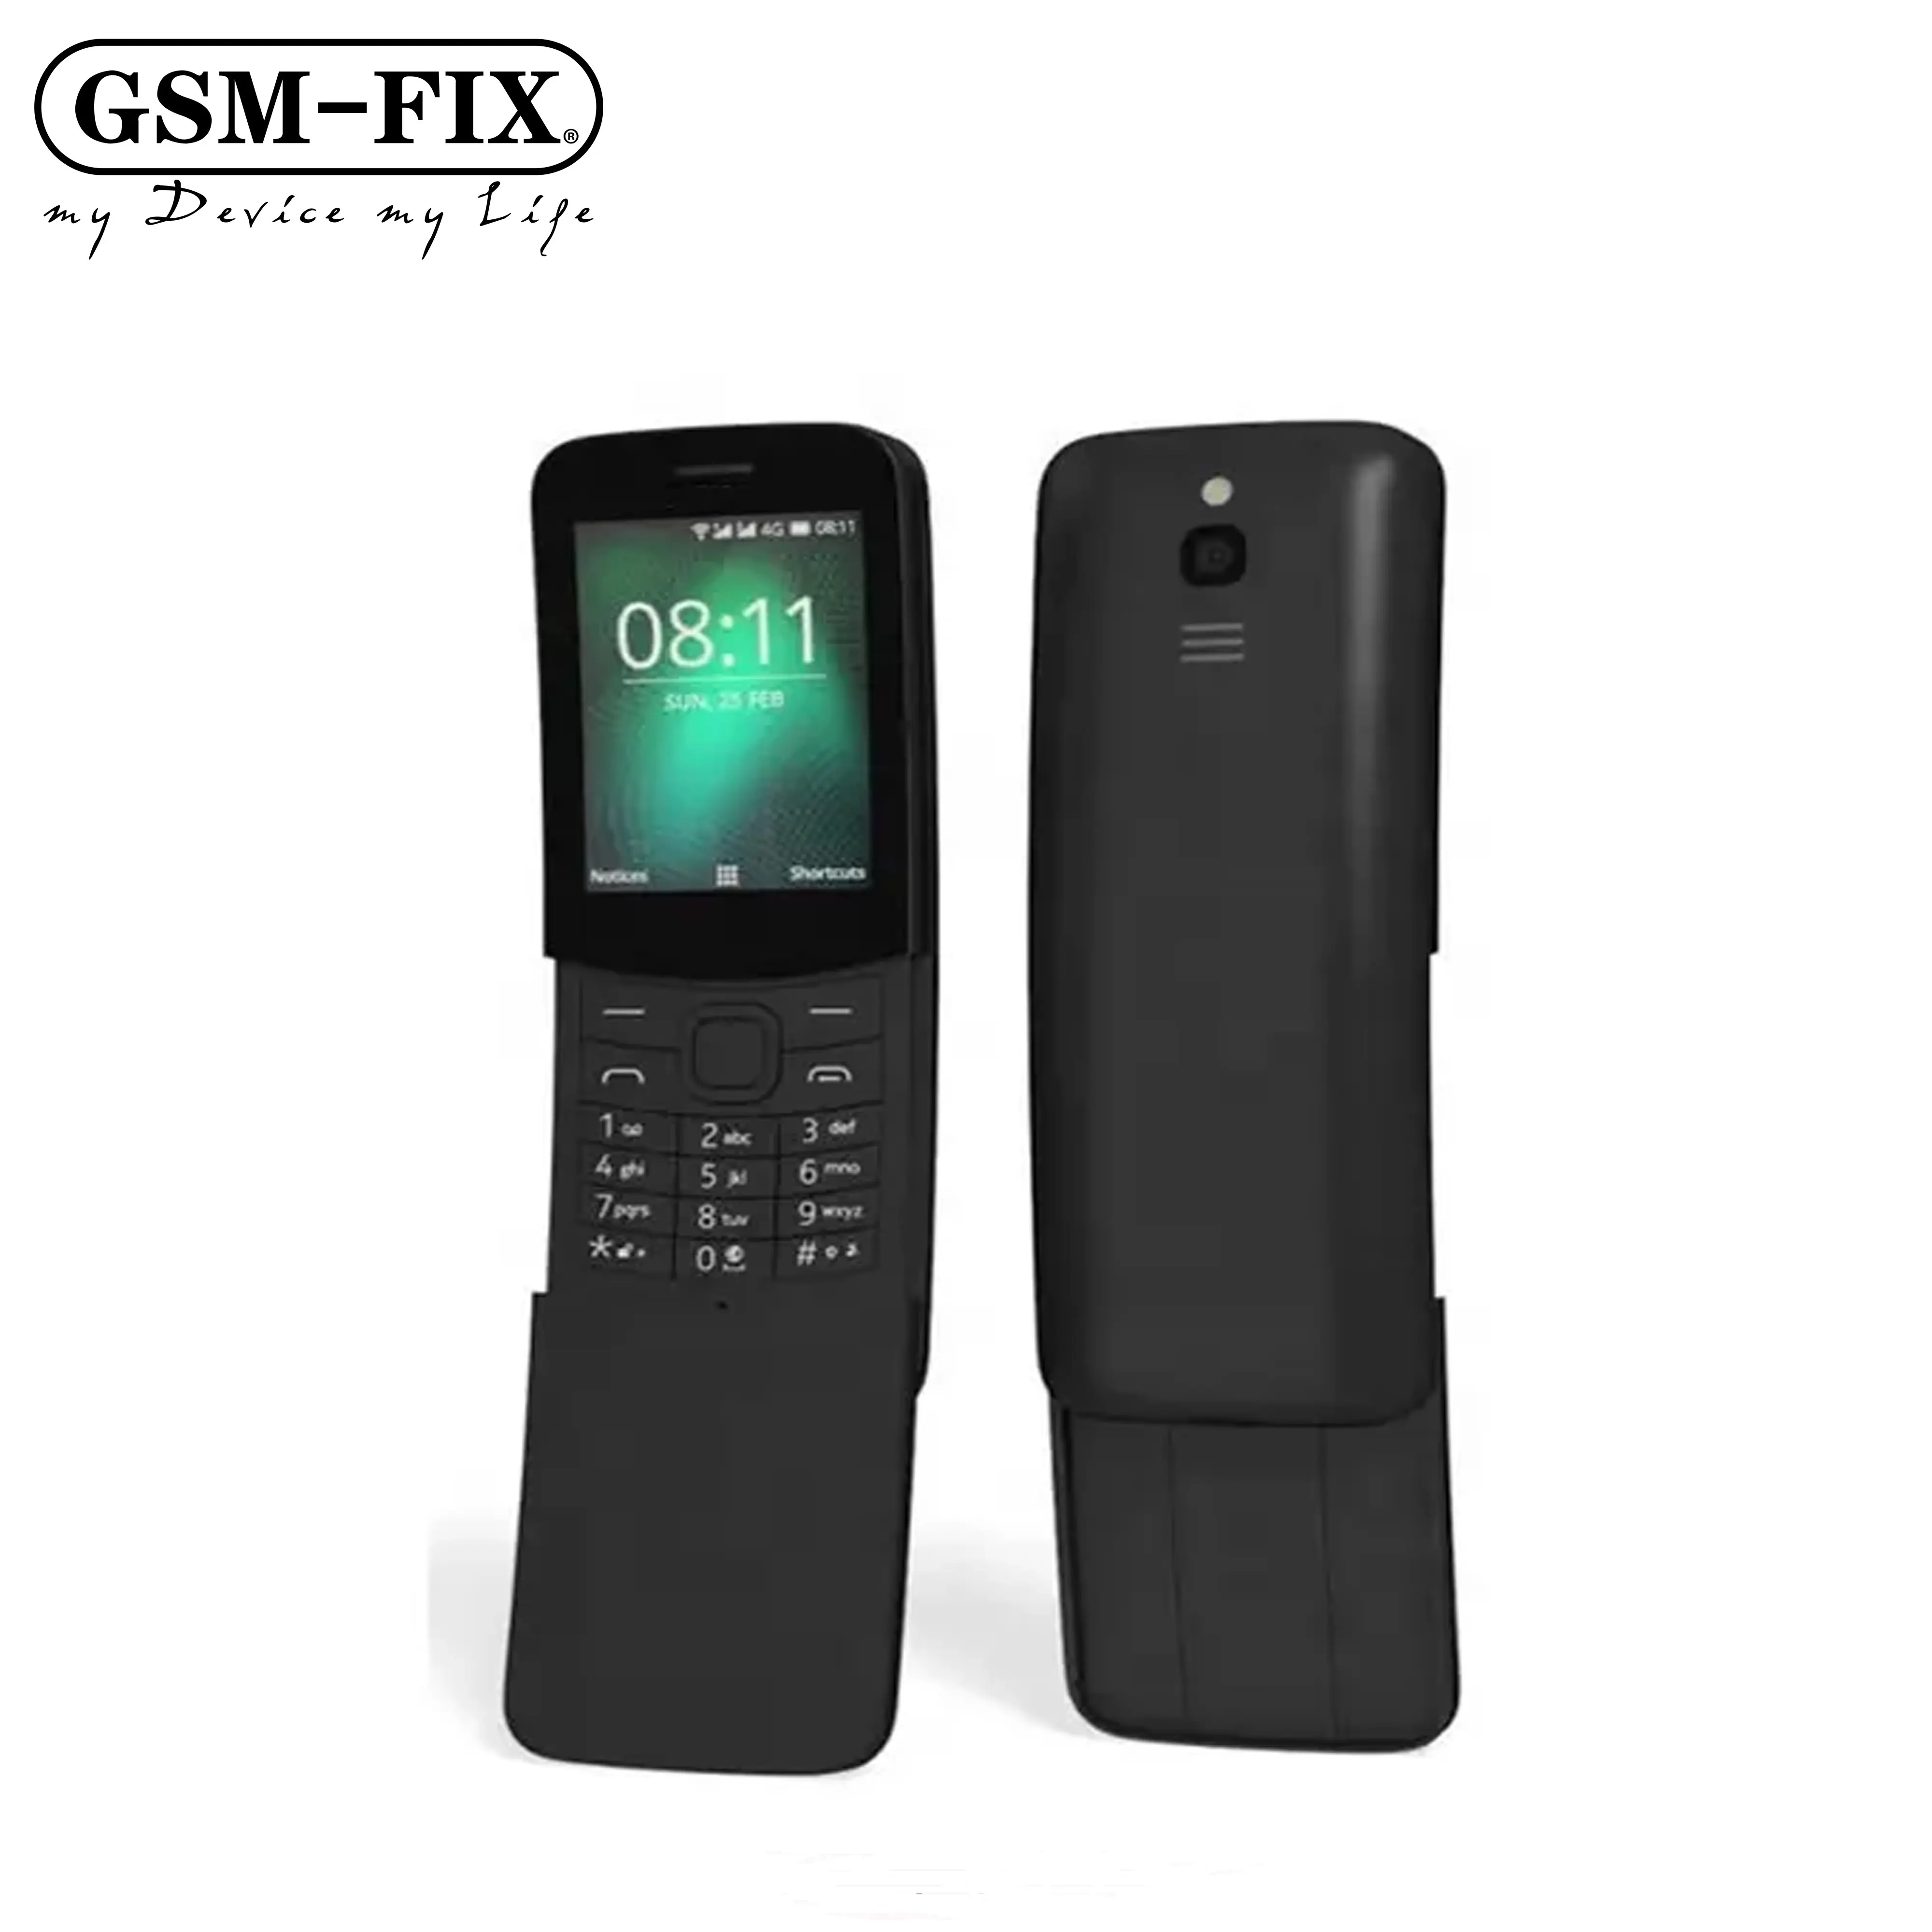 Nokia 8110 4G 에 대한 GSM-FIX 베스트 바이 원래 공장 잠금 해제 슈퍼 저렴한 클래식 슬라이더 모바일 휴대 전화